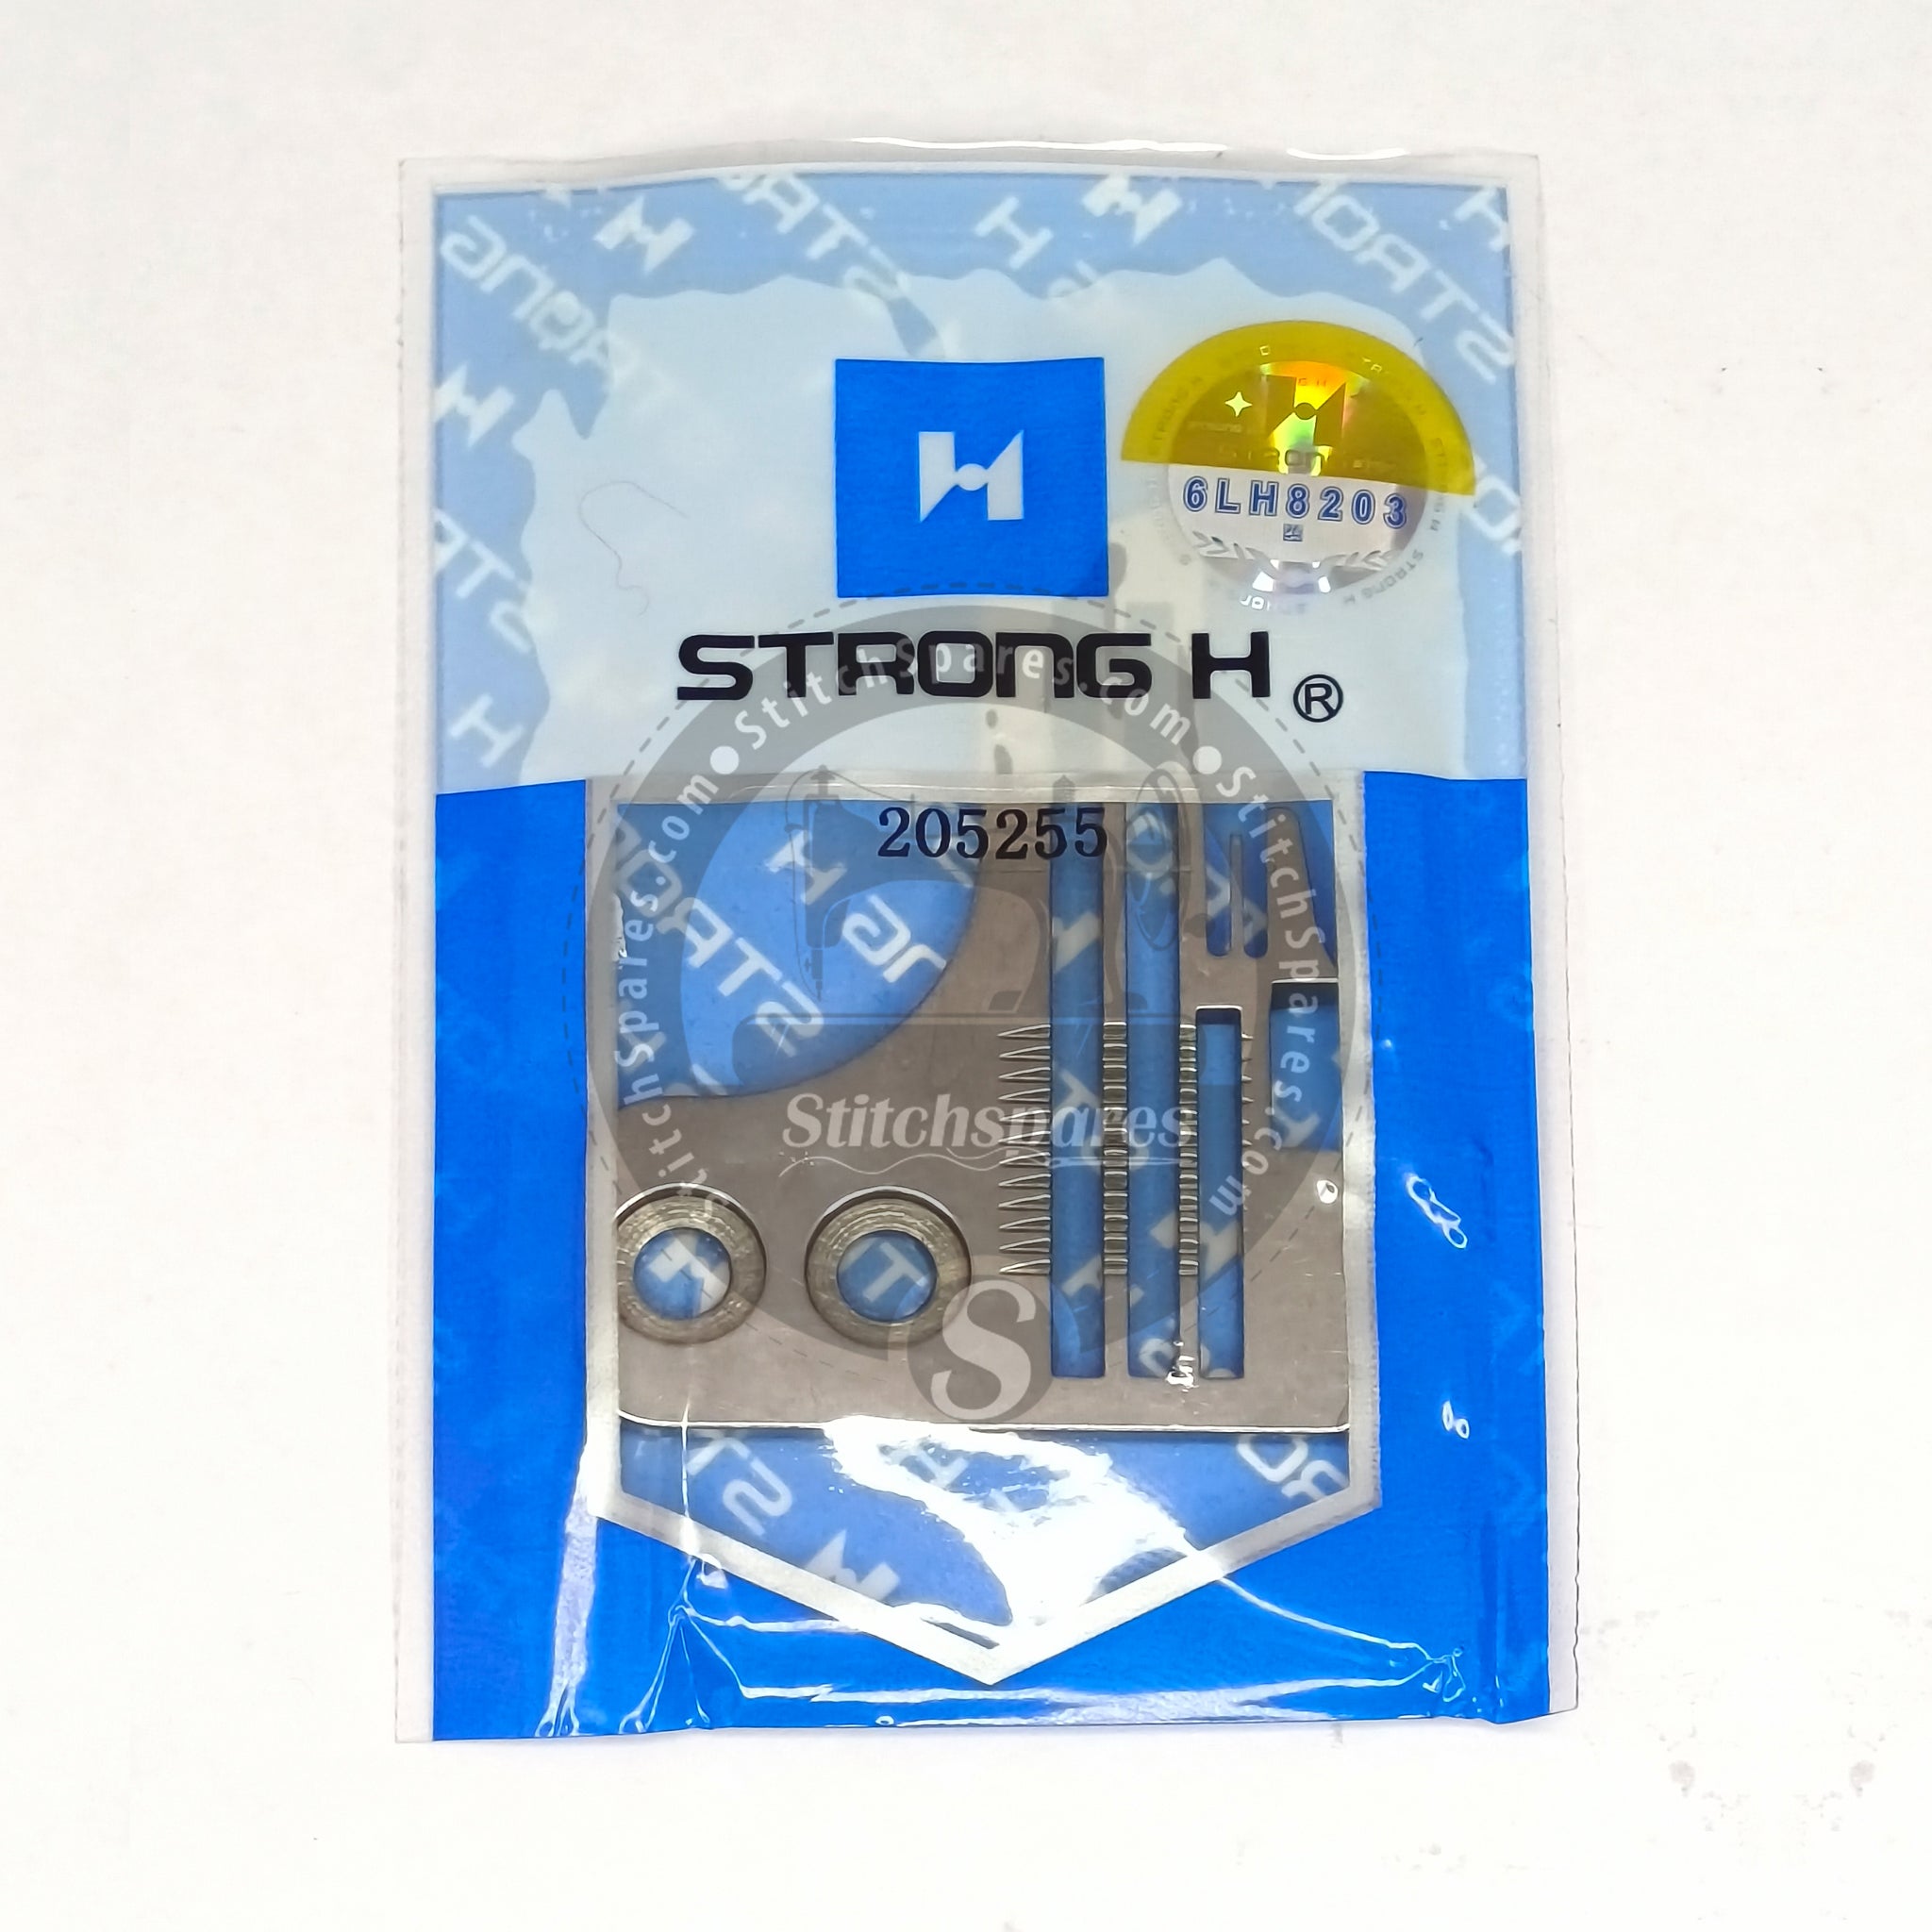 STRONGH 205255 Placa de aguja PEGASUS M752-13 (2×3) Repuesto para máquina de coser